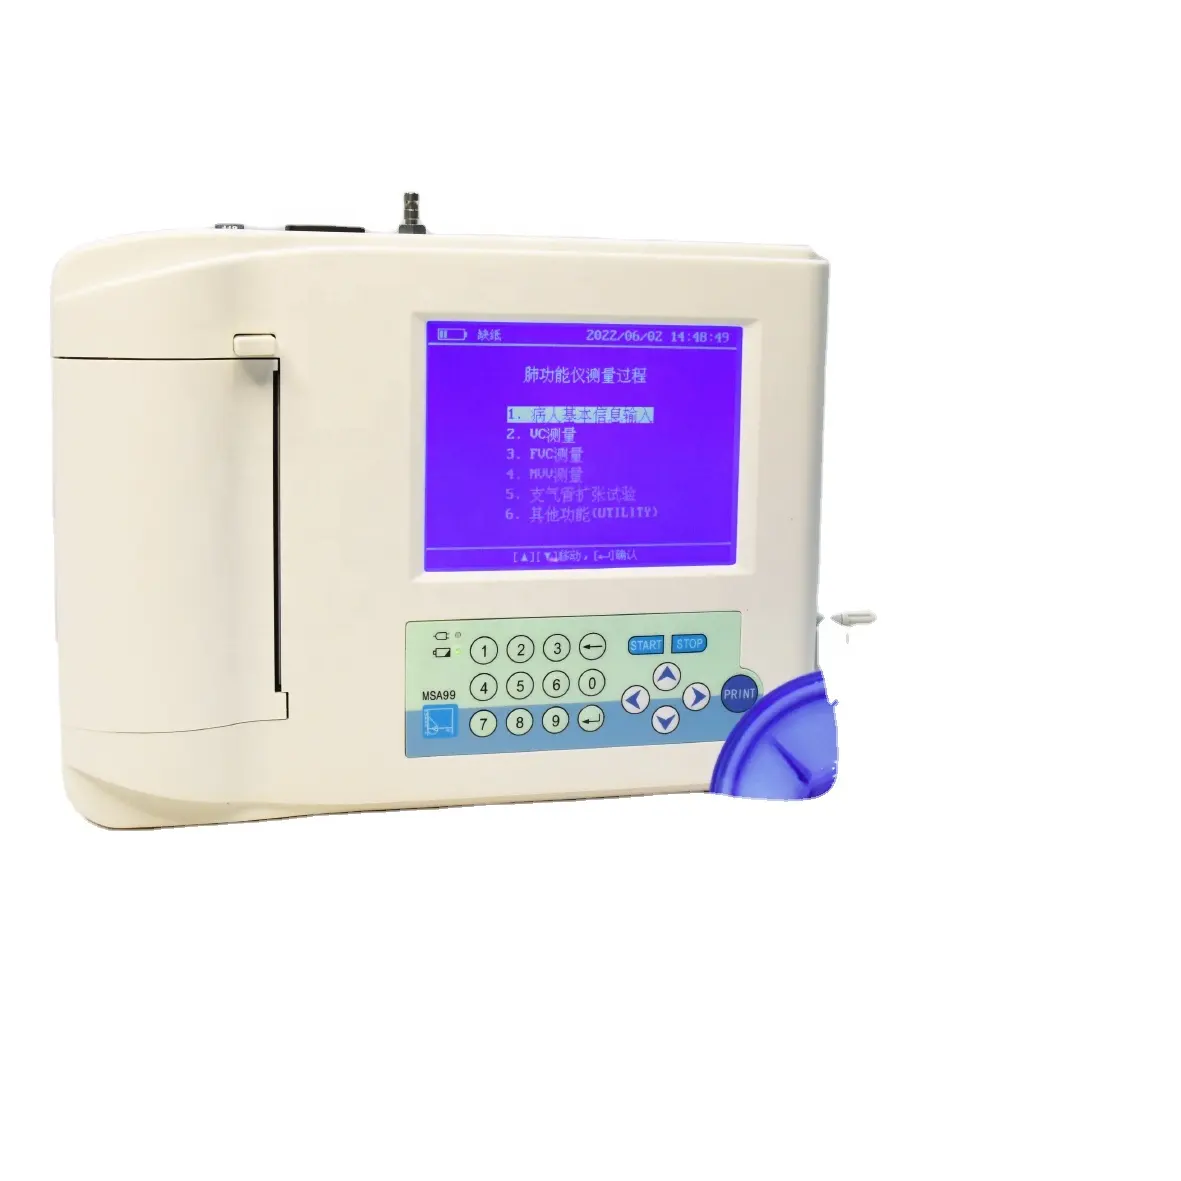 अस्पताल क्लिनिक spirometry हाथ में इलेक्ट्रॉनिक Spirometer फेफड़ों परीक्षक पोर्टेबल Spirometer